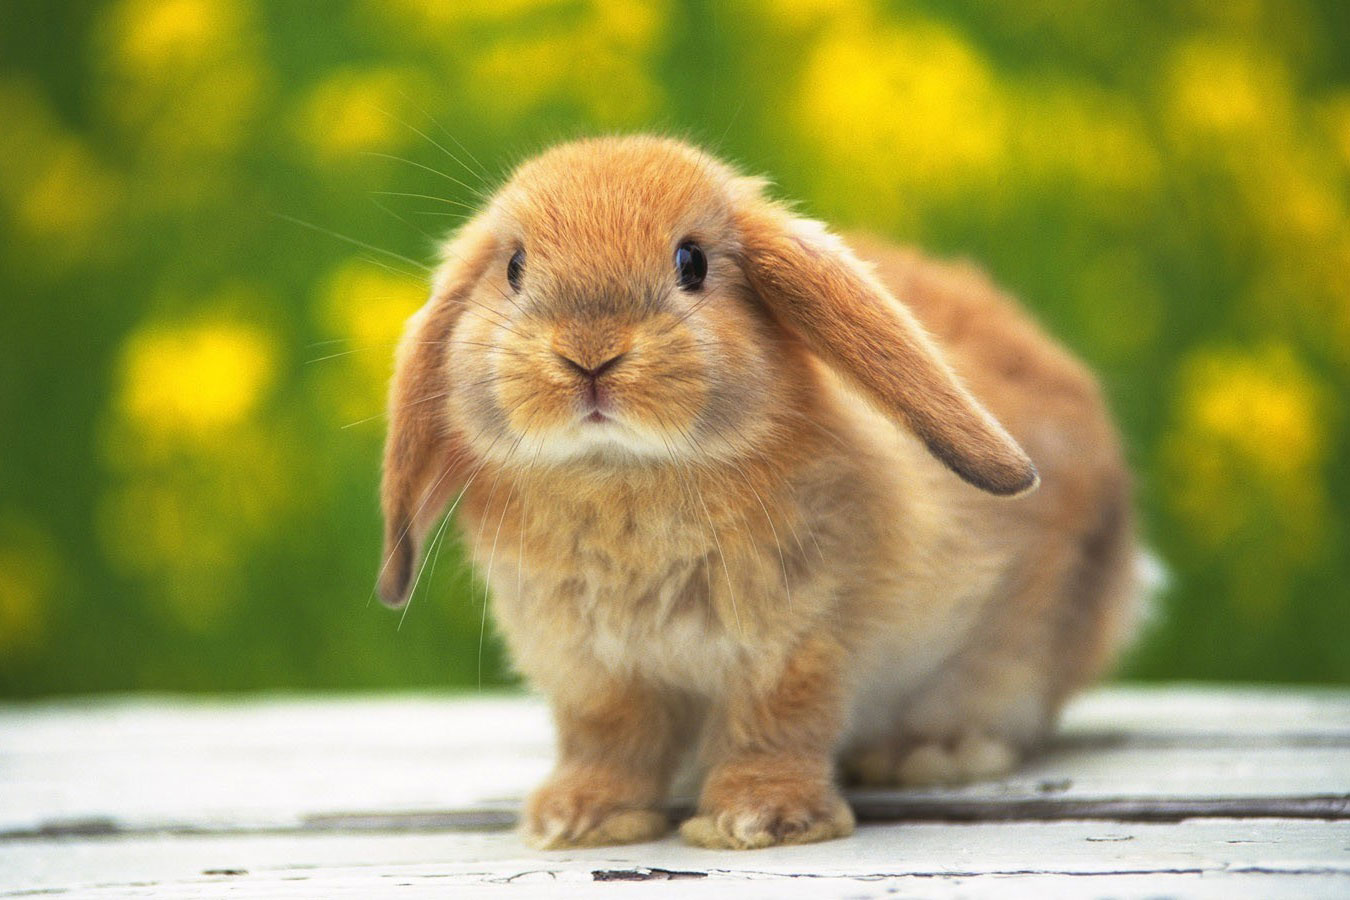 Rabbit coniglietto